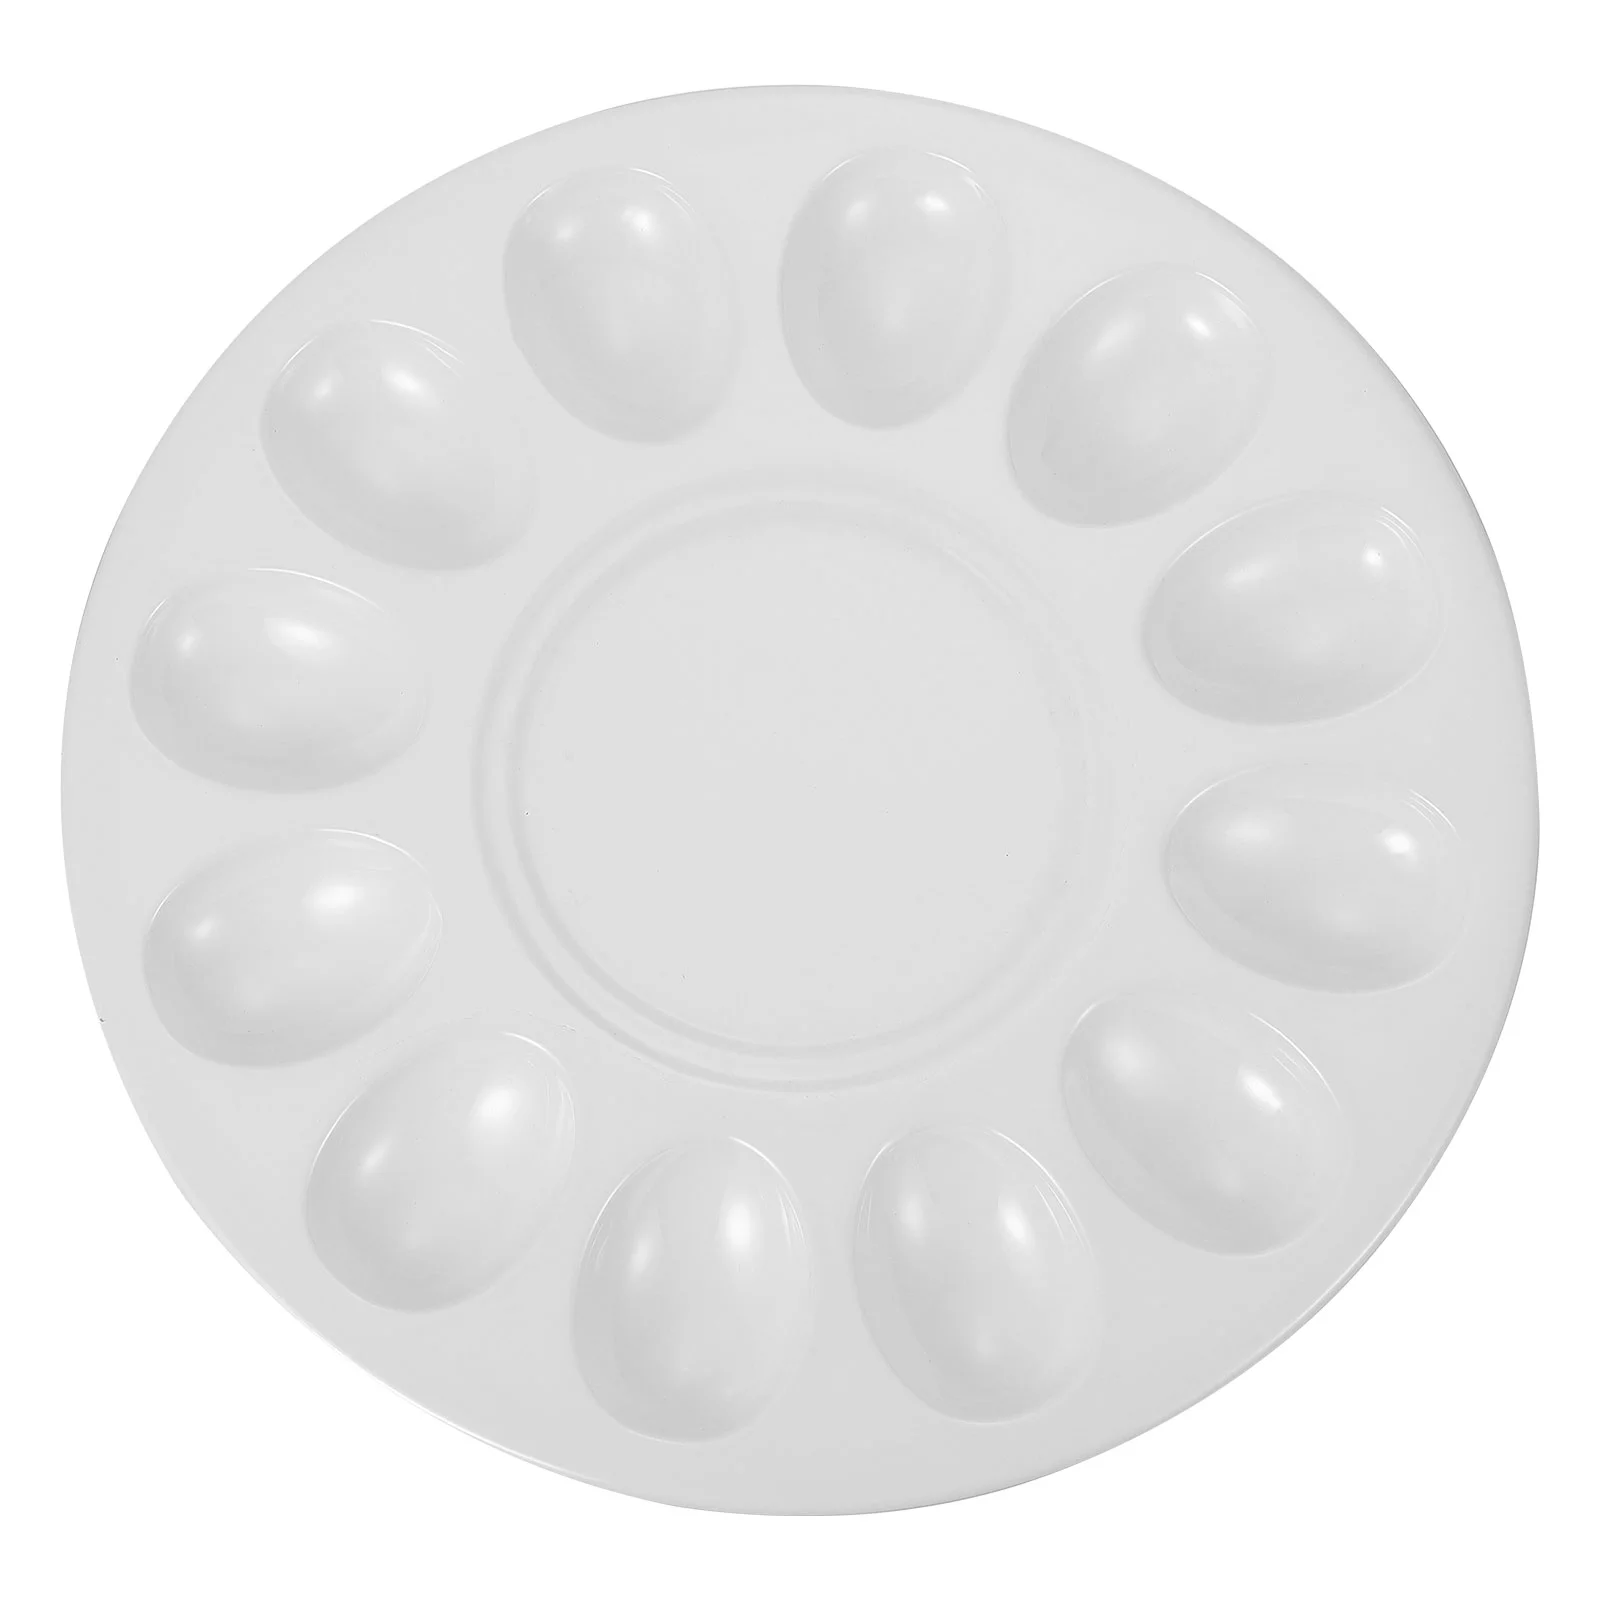 

Deviled Egg Platter Tray Holds 12 Eggs Sleek Melamine Dish Shrimp Paste Plate Display Holder Egg Tray Egg Plate for Meatball